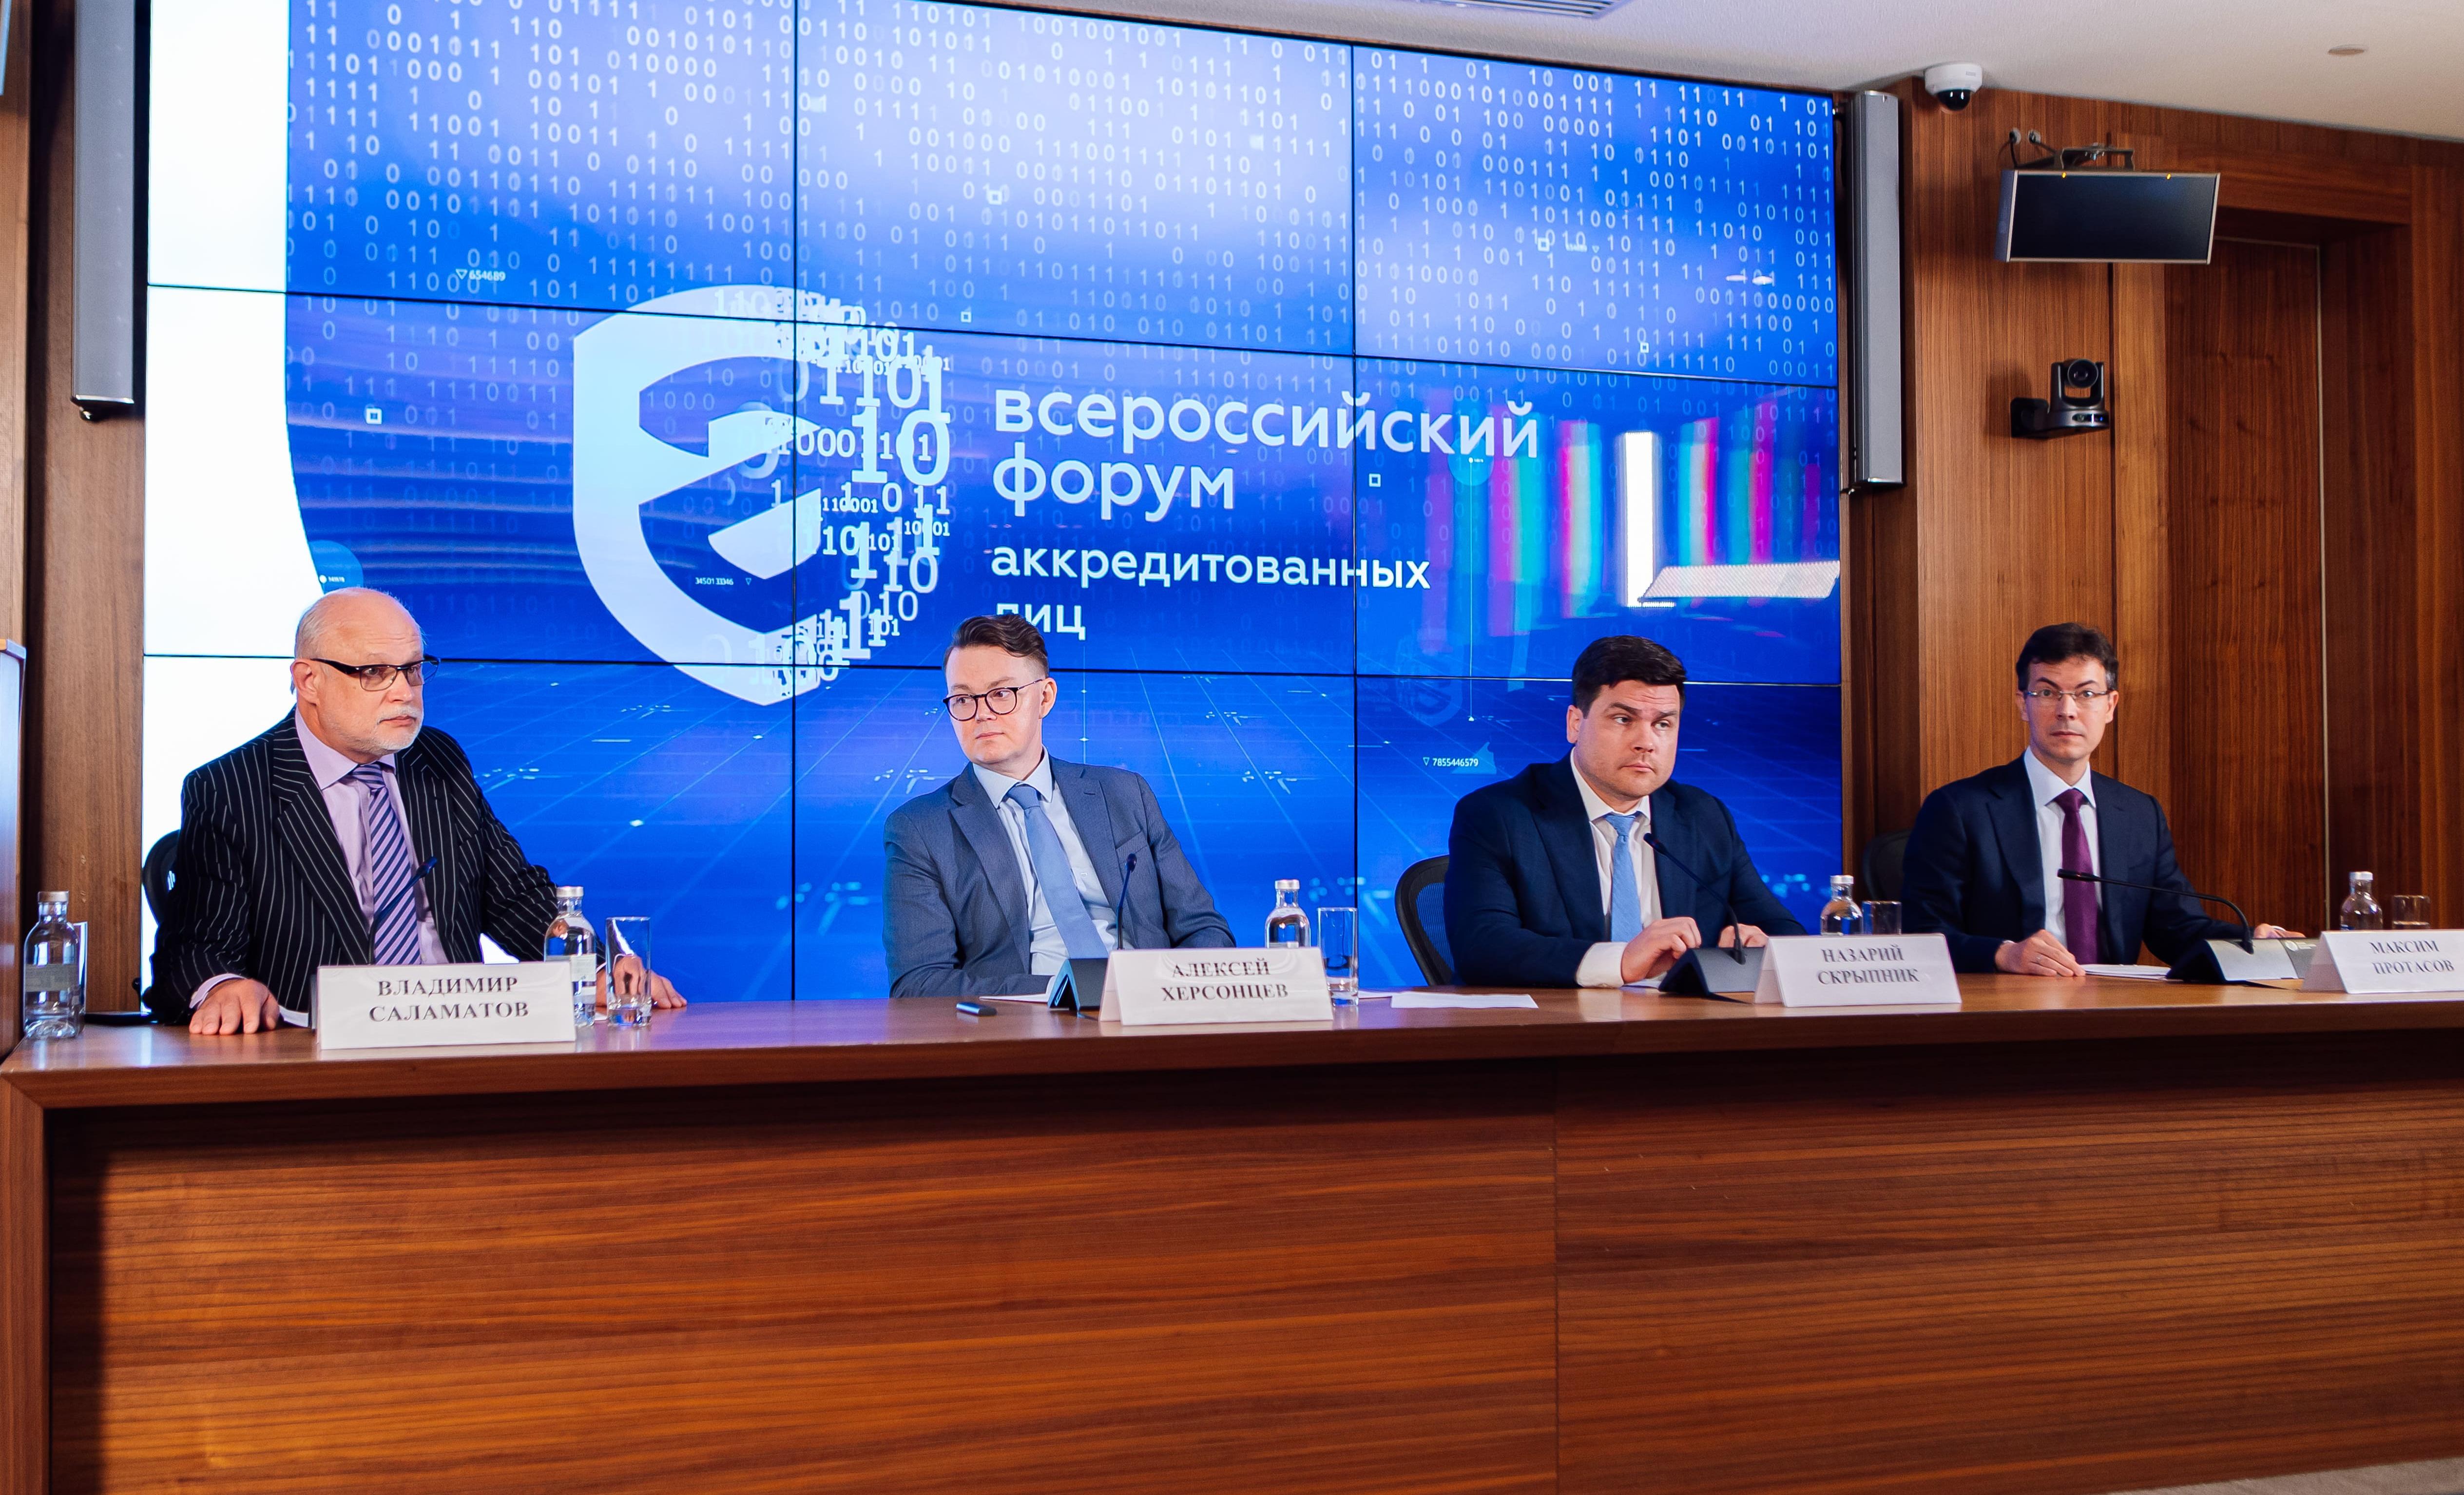 Становление национальной системы аккредитации и тенденции ее развития обсудили на Всероссийском форуме аккредитованных лиц